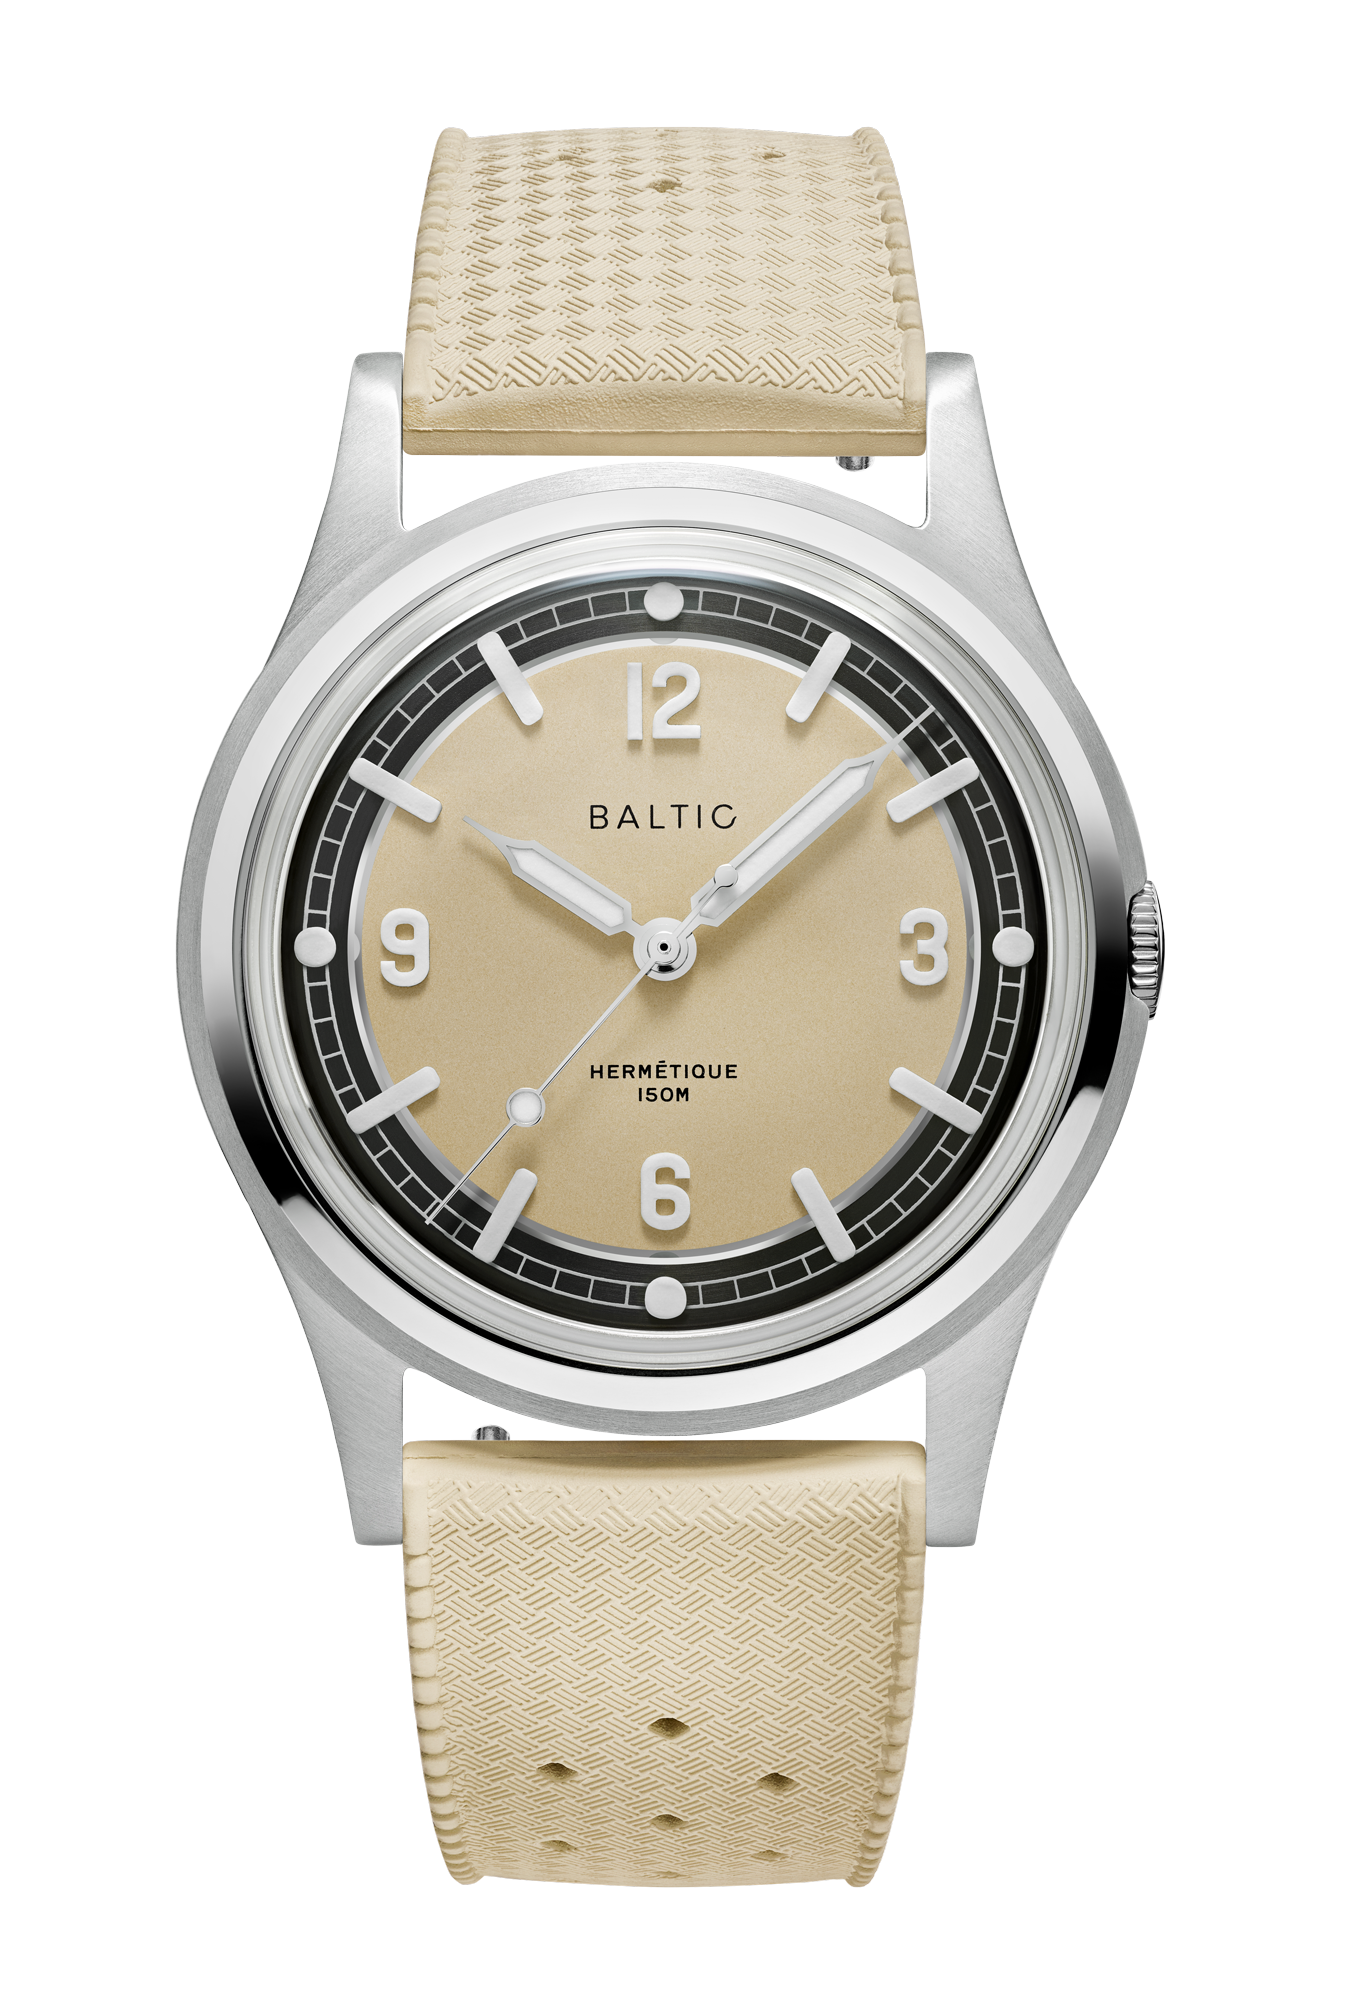 Baromètre Nautique - noir - Série Baltic 110 - Autonautic